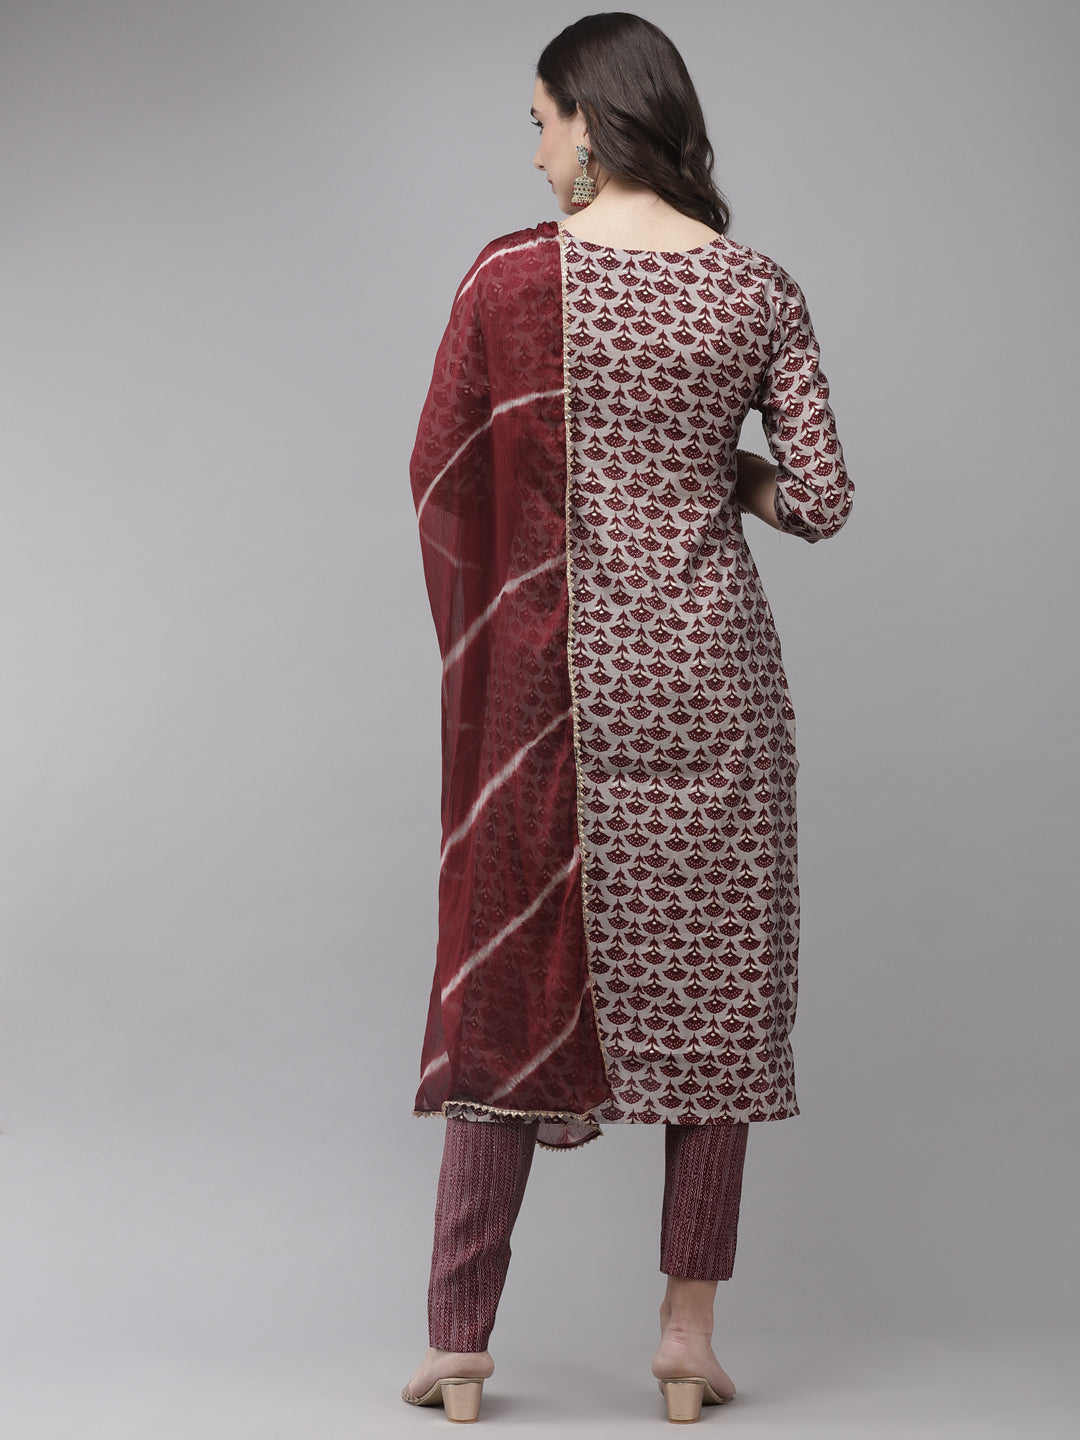 Women's Silk Blend Grey & Maroon Embroidered A-Line Kurta Trouser Dupatta Set - Navyaa